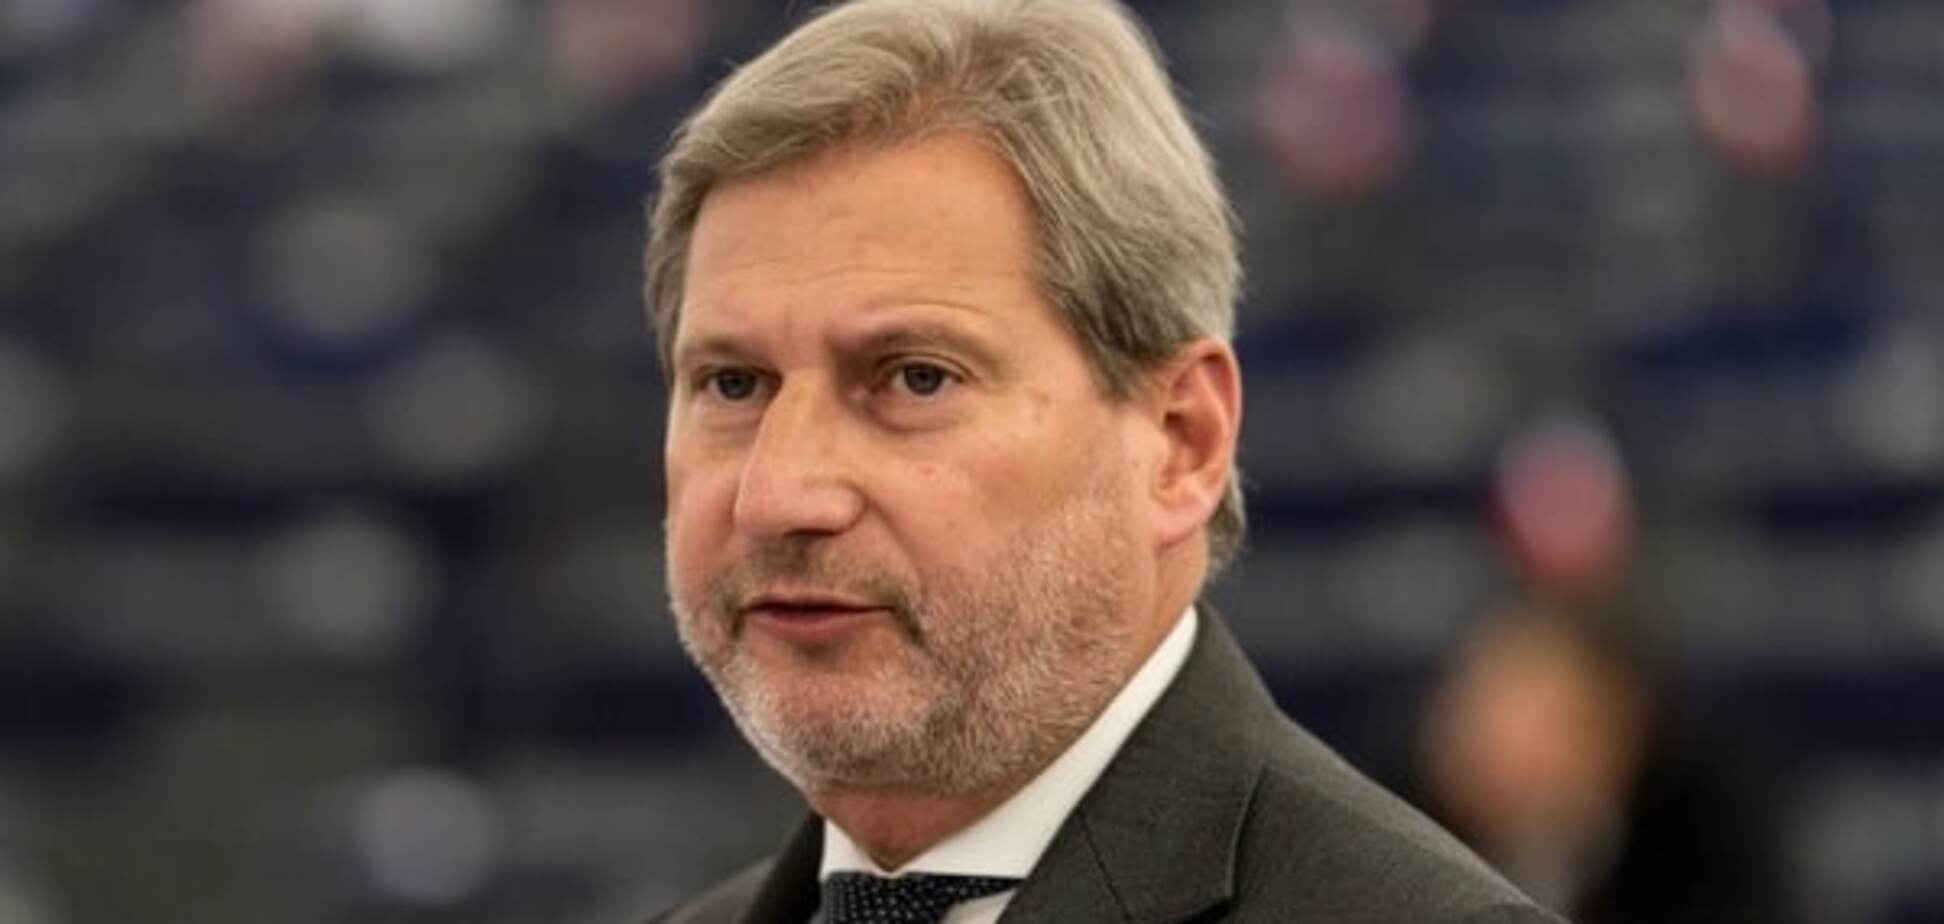 Єврокомісар: референдум у Нідерландах не вплине на відносини Україна-ЄС 